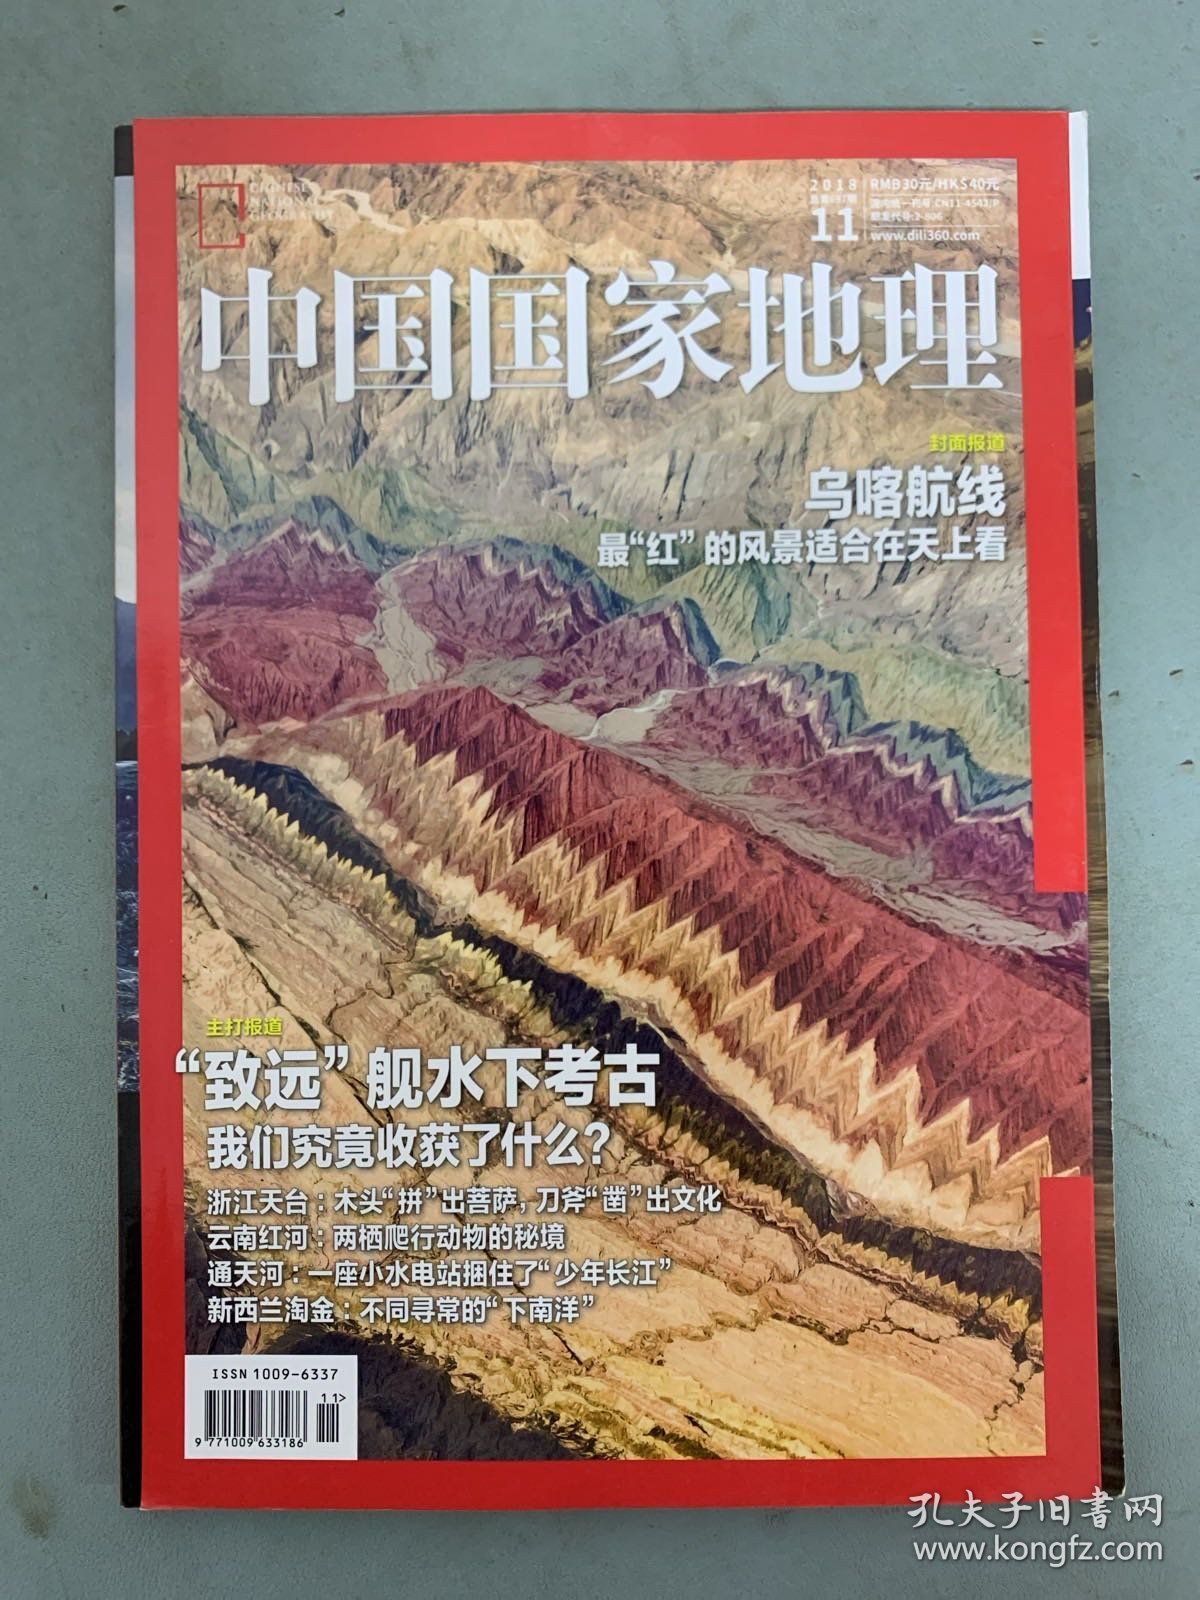 中国国家地理 2018年 月刊 第11期总第697期 封面报道：乌喀航线 主打报道：“致远”舰水下考古 杂志